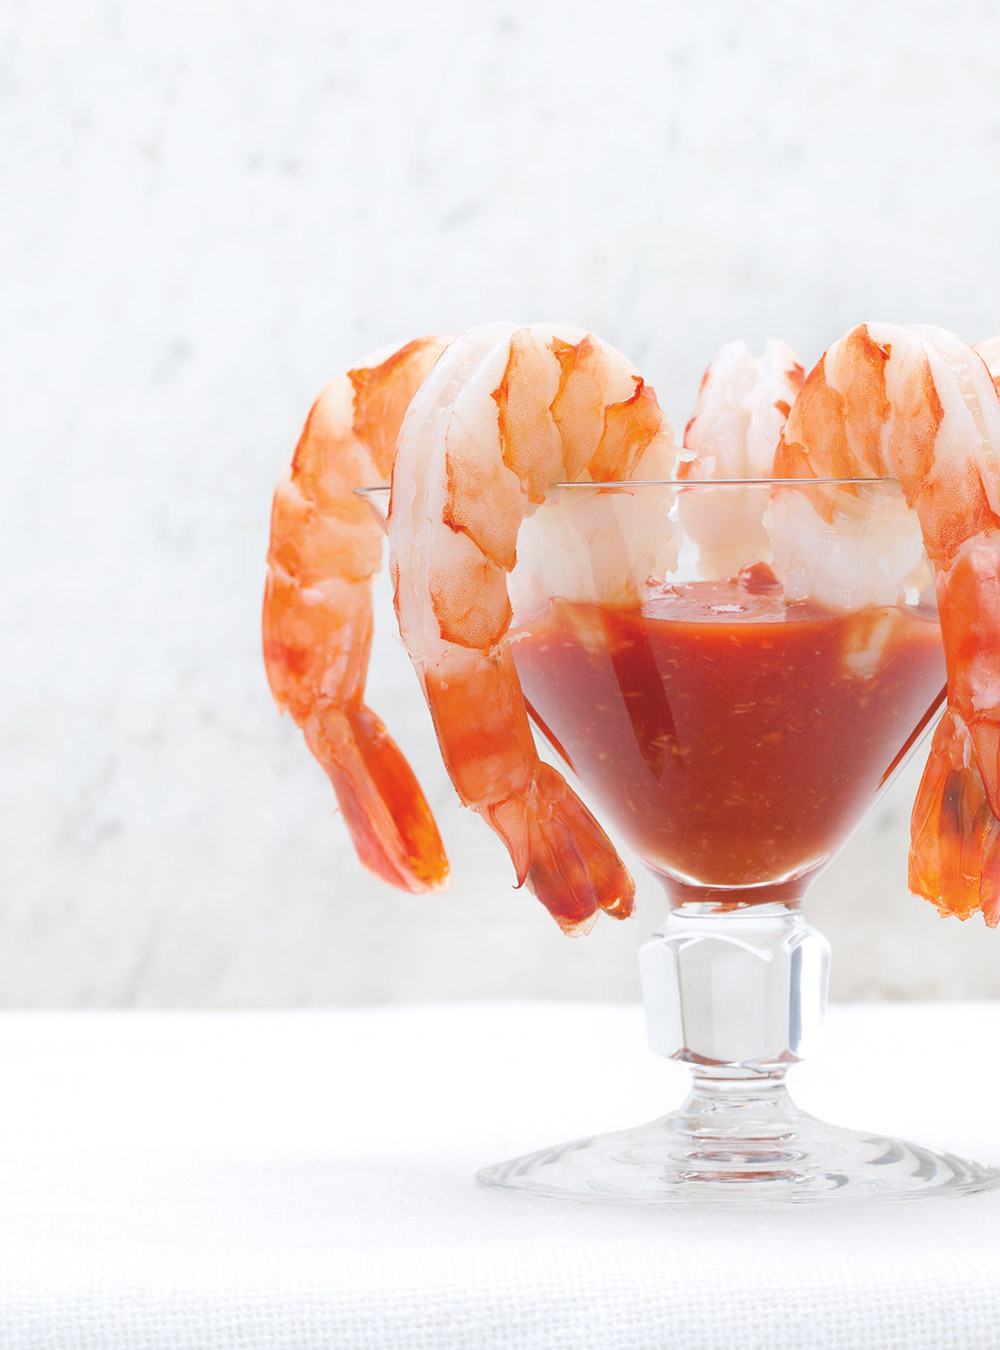 Leckere Idee für einen Crevetten Cocktail mit Tomatensaft